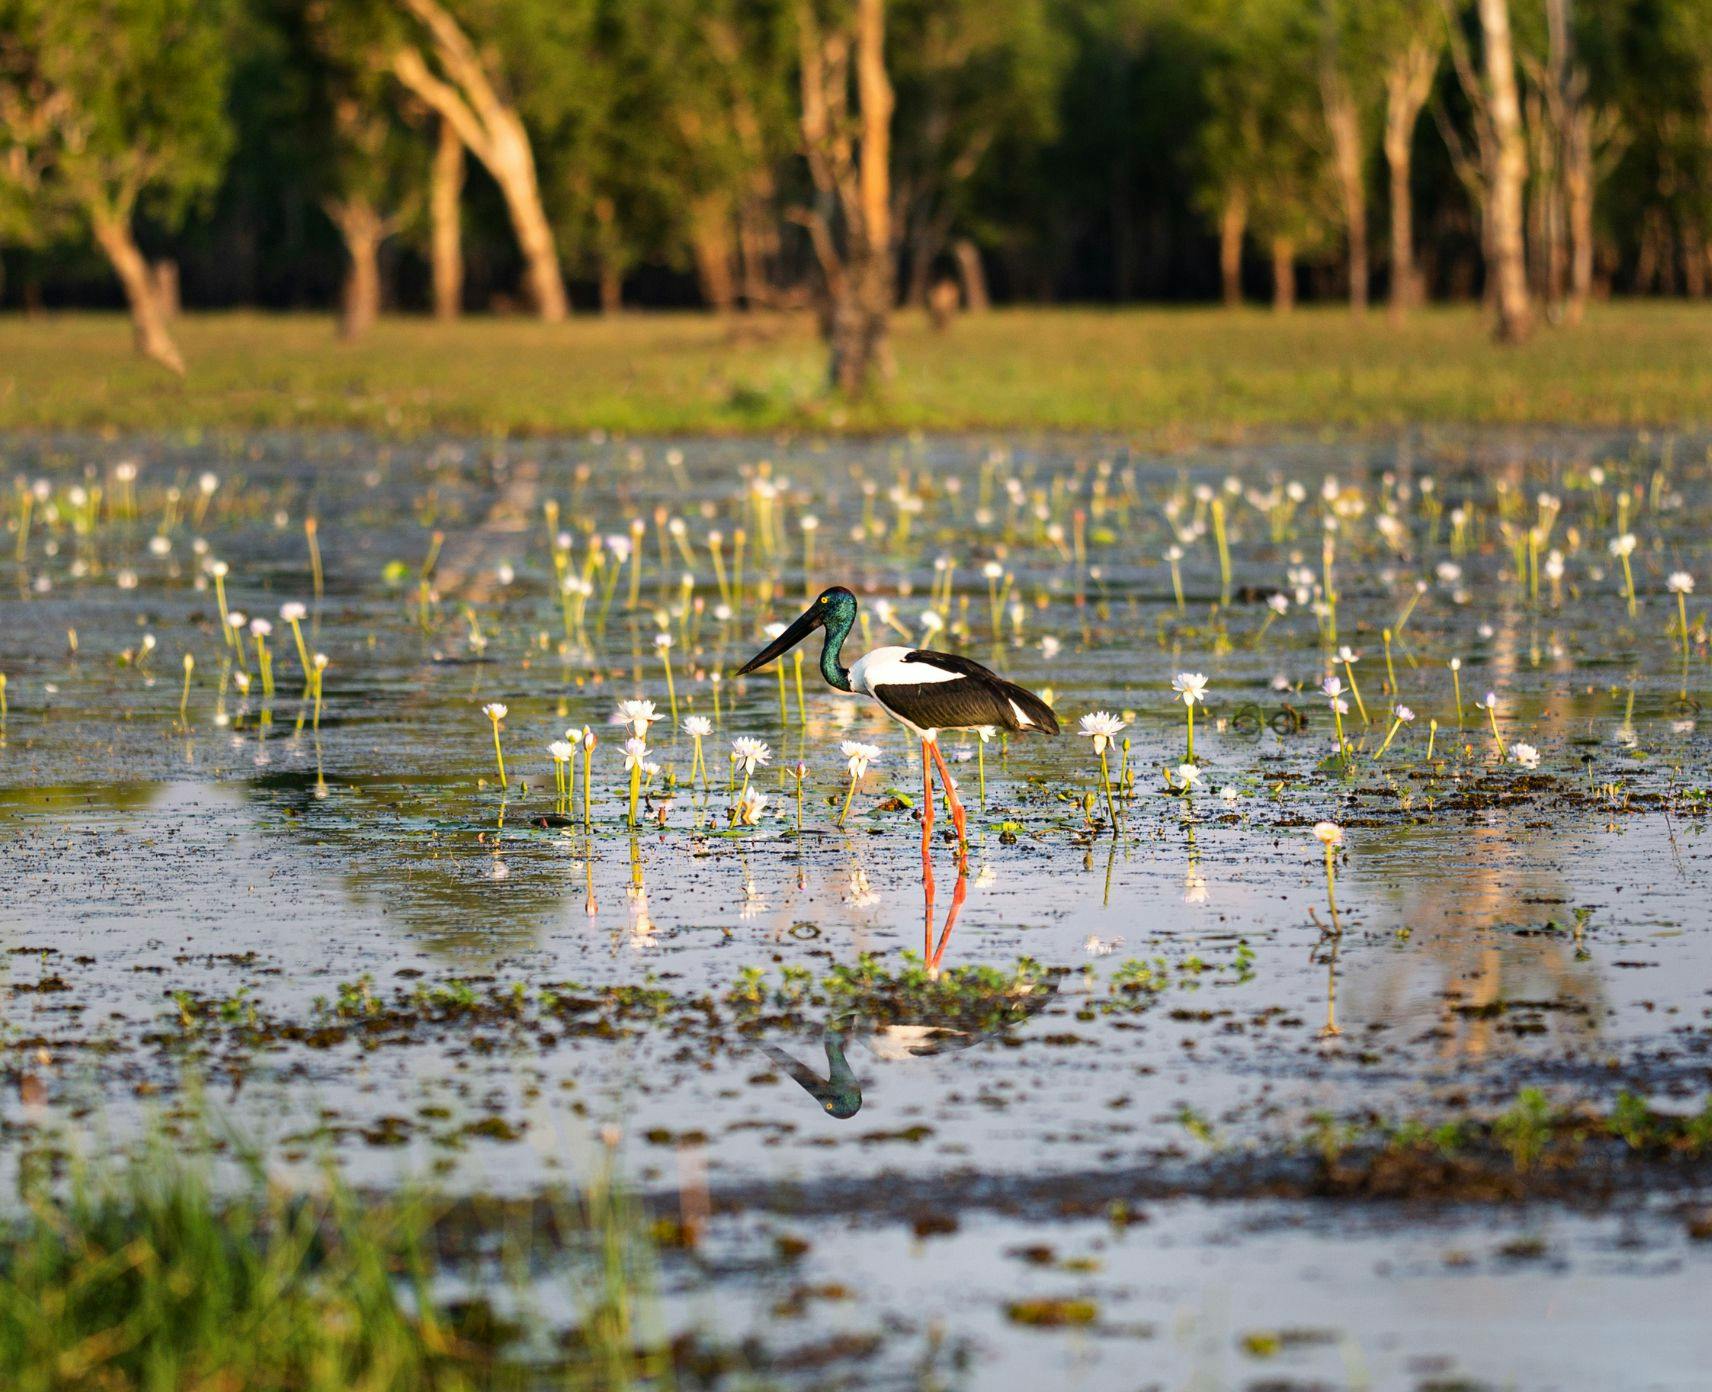 A Jabiru stands in the wetlands of the Kakadu National Park